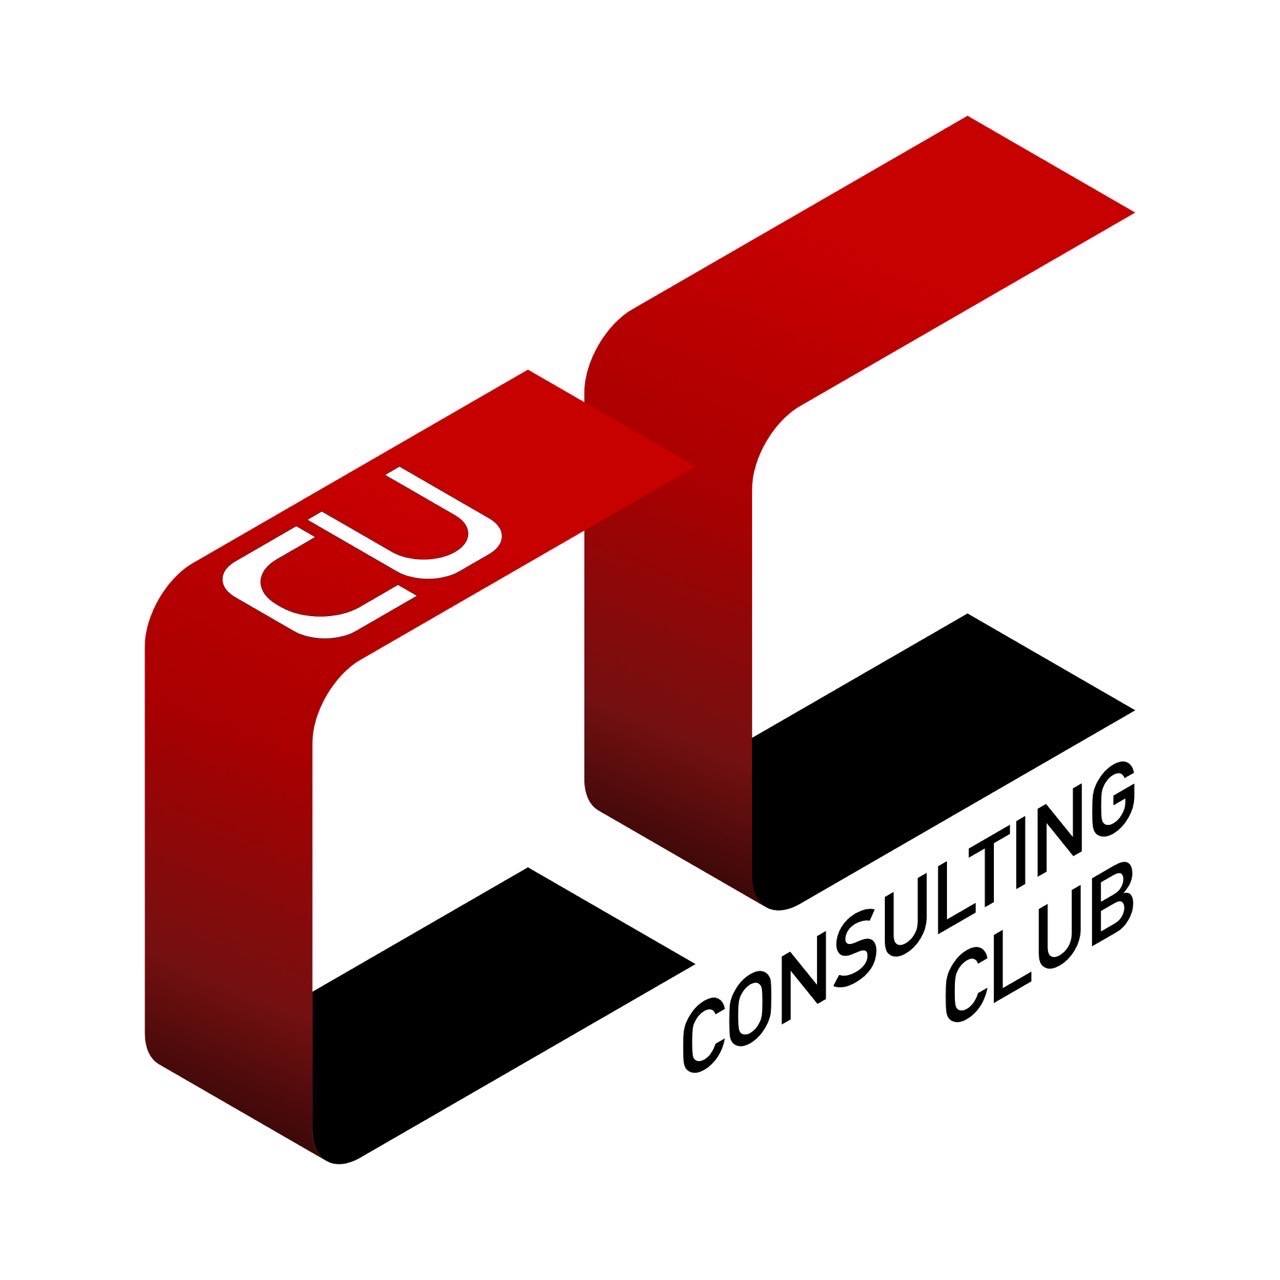 CU Consulting Club